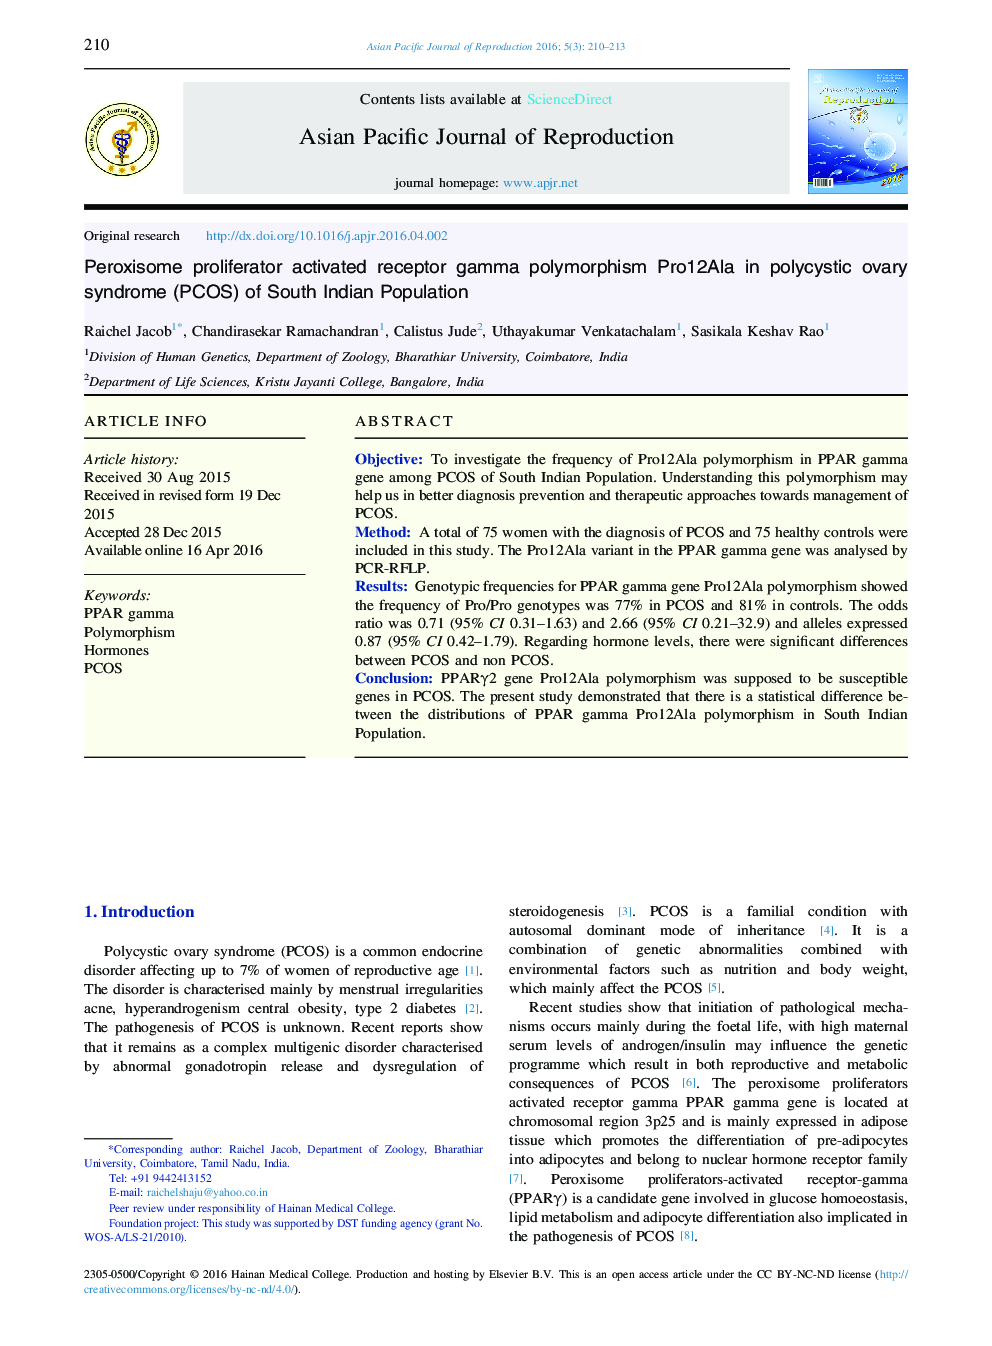 پلی‌مورفیسم Pro12Ala گامای گیرنده فعال تکثیرکننده پراکسیوم در سندرم تخمدان پلی کیستیک (PCOS) جمعیت جنوب هند